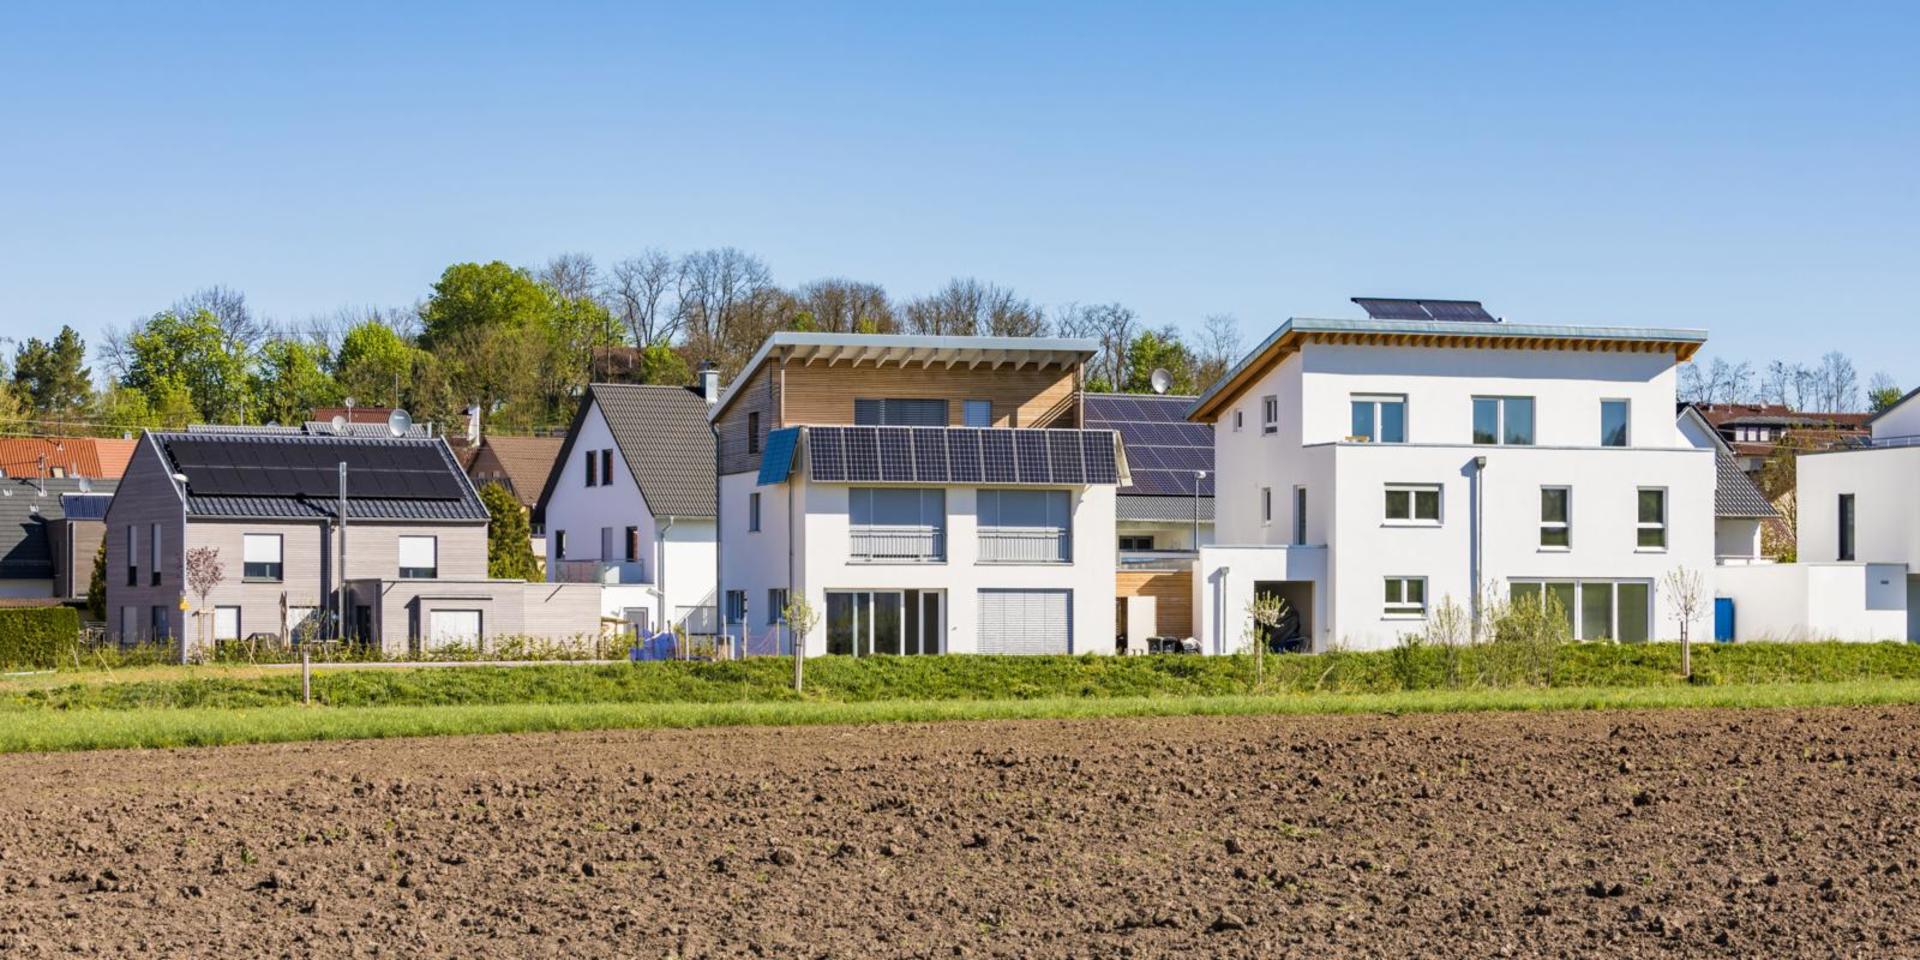 Eine Siedlung mit Häusern, die Solaranlagen auf dem Dach haben.